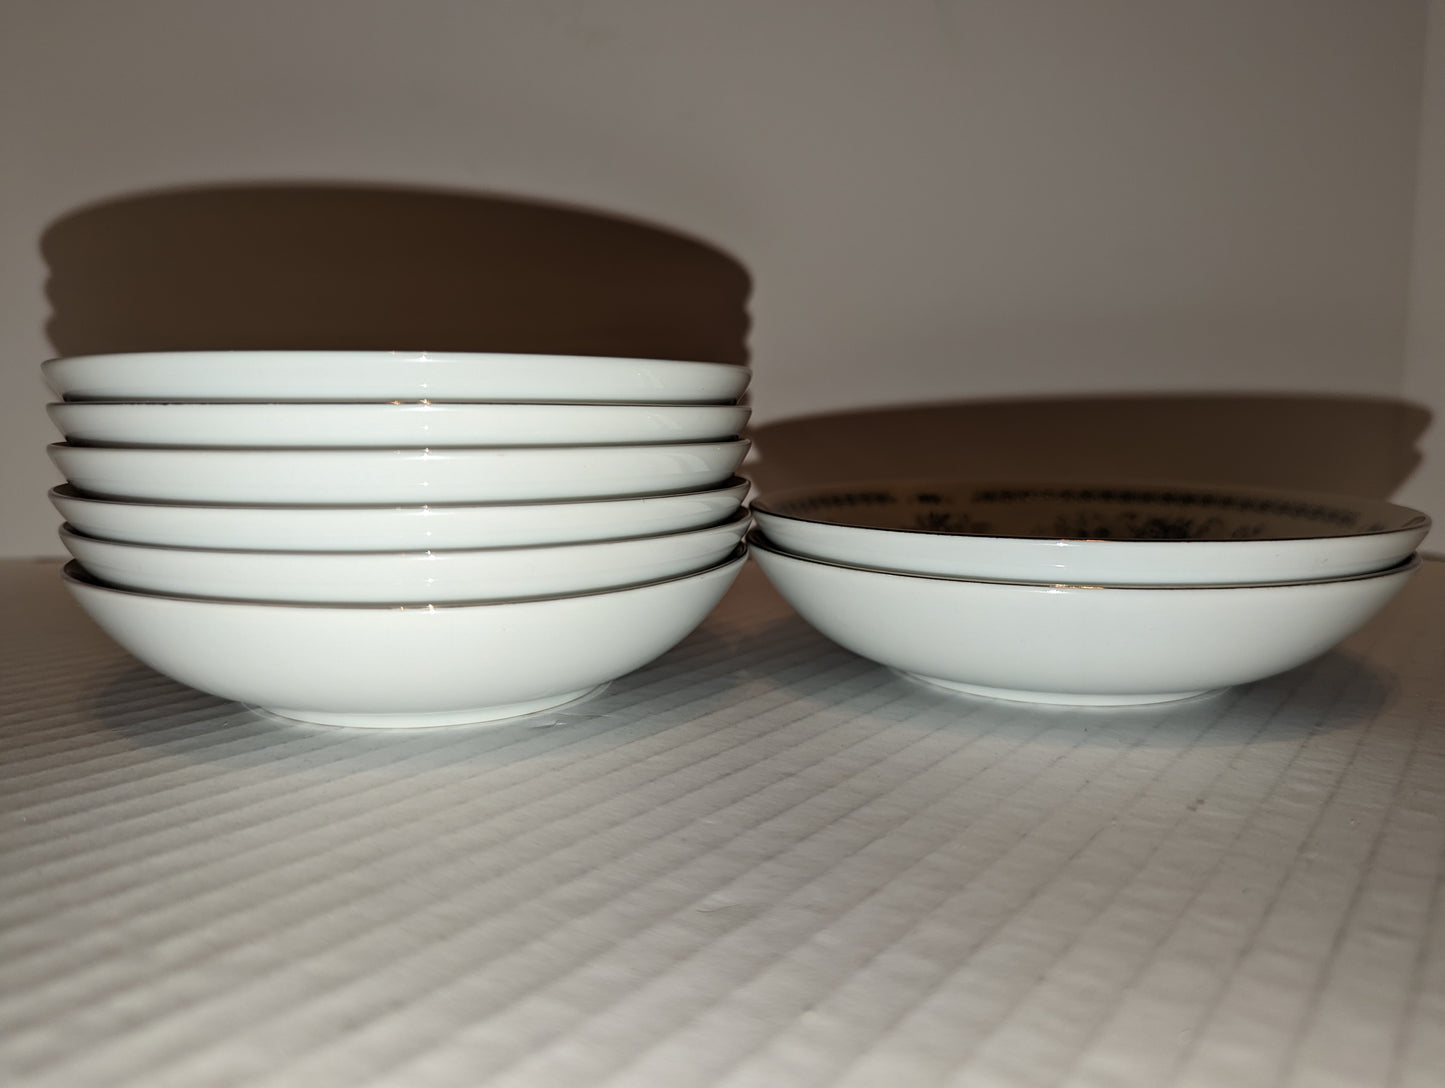 Christine Fine Porcelain China, Japan Vintage Fruit/Dessert Sauce Bowls (8)